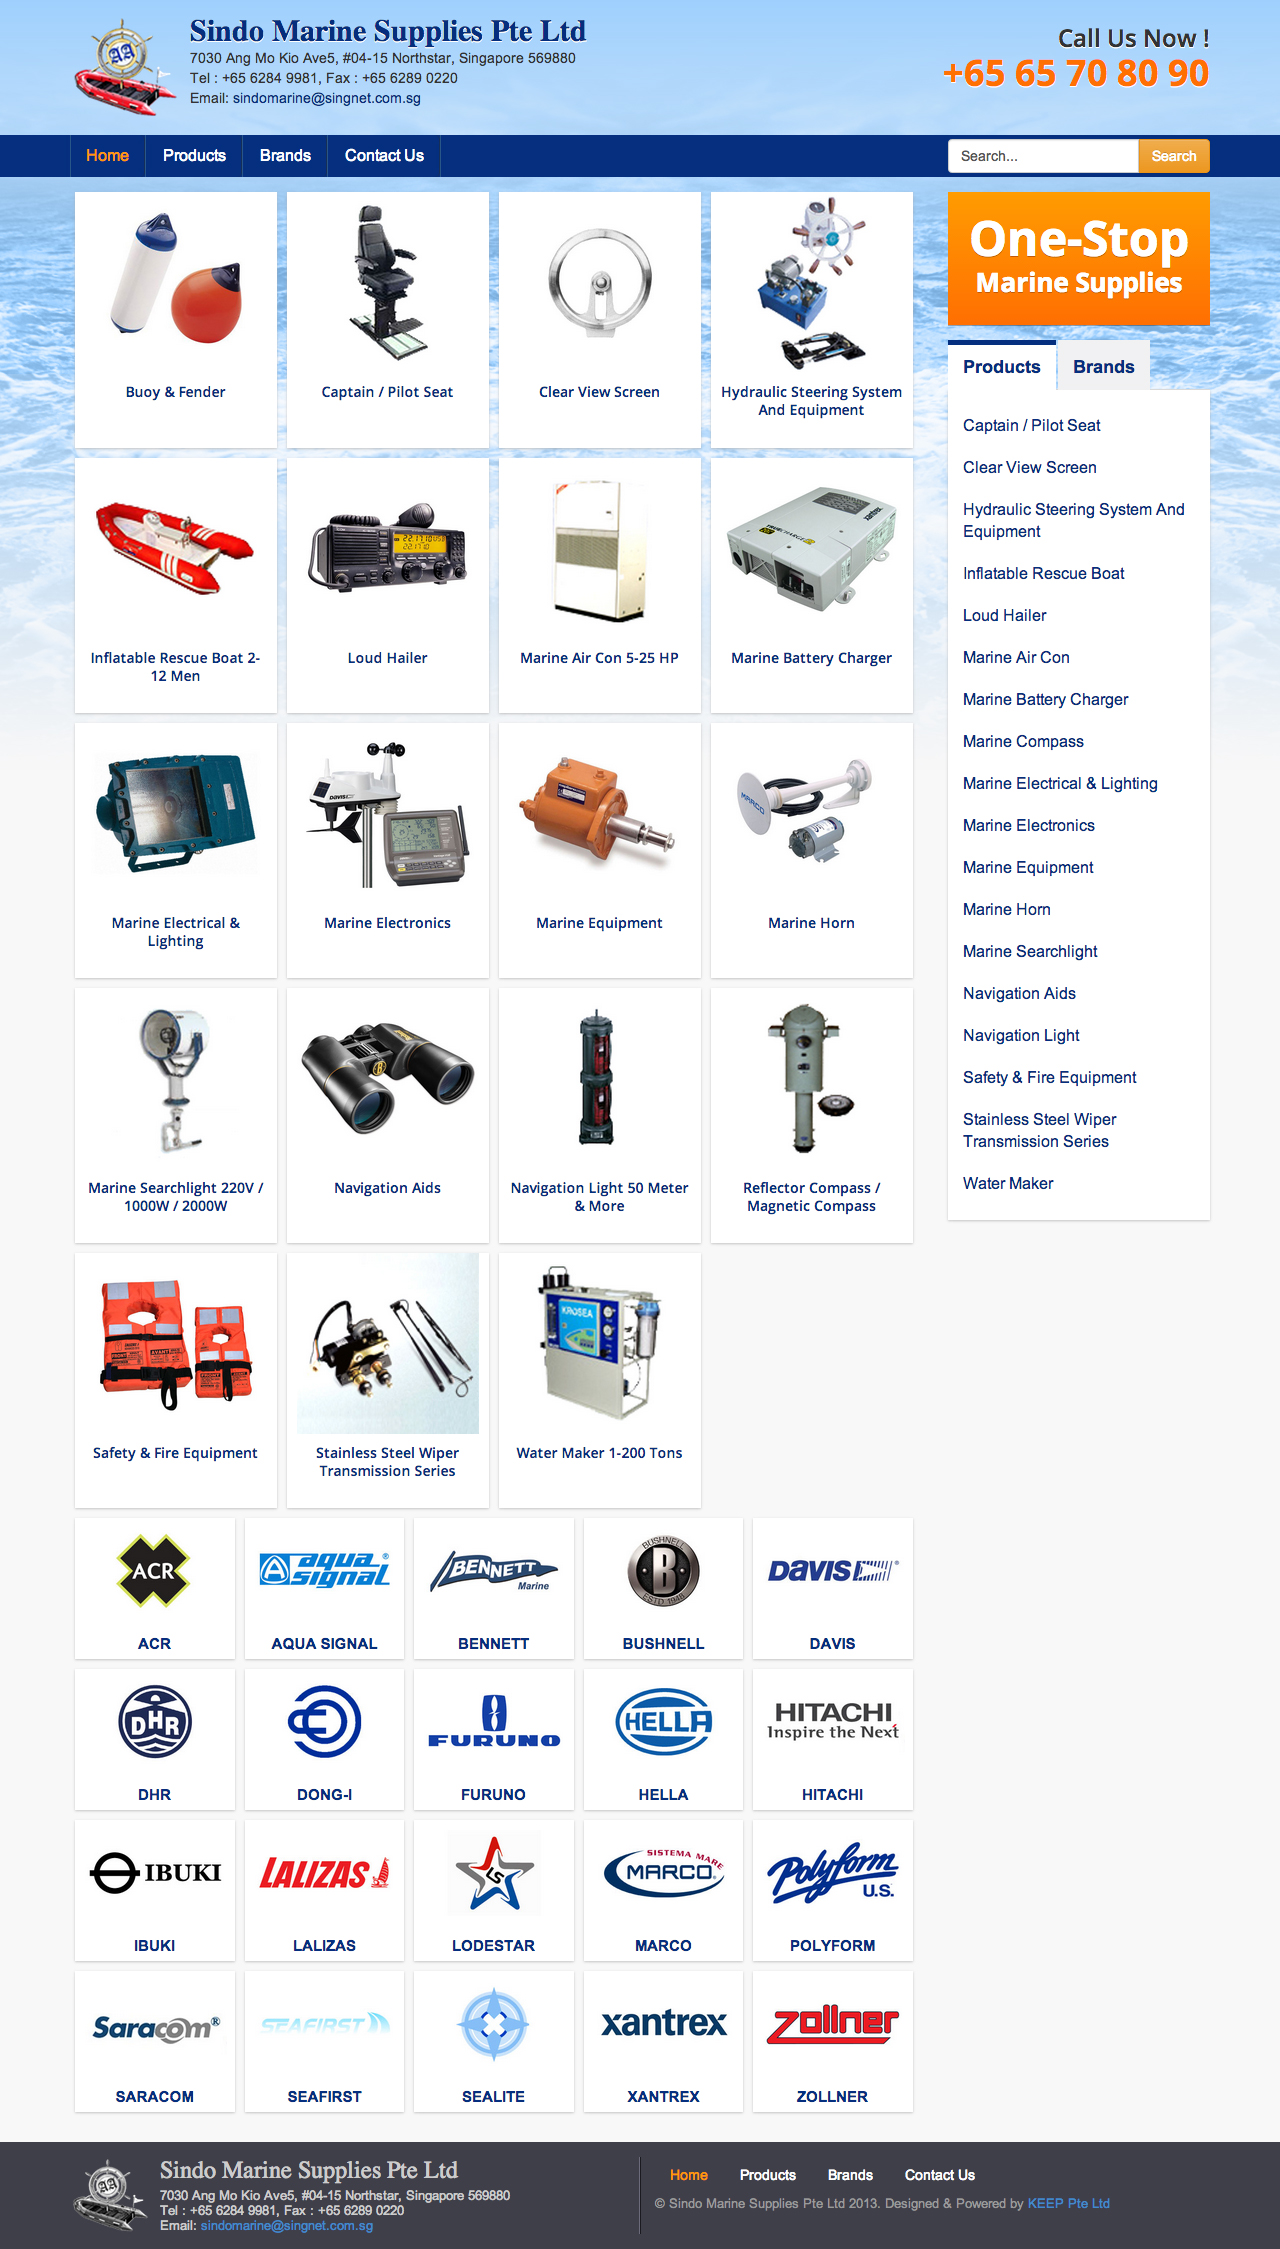 Sindo Marine Supplies Pte Ltd website homepage